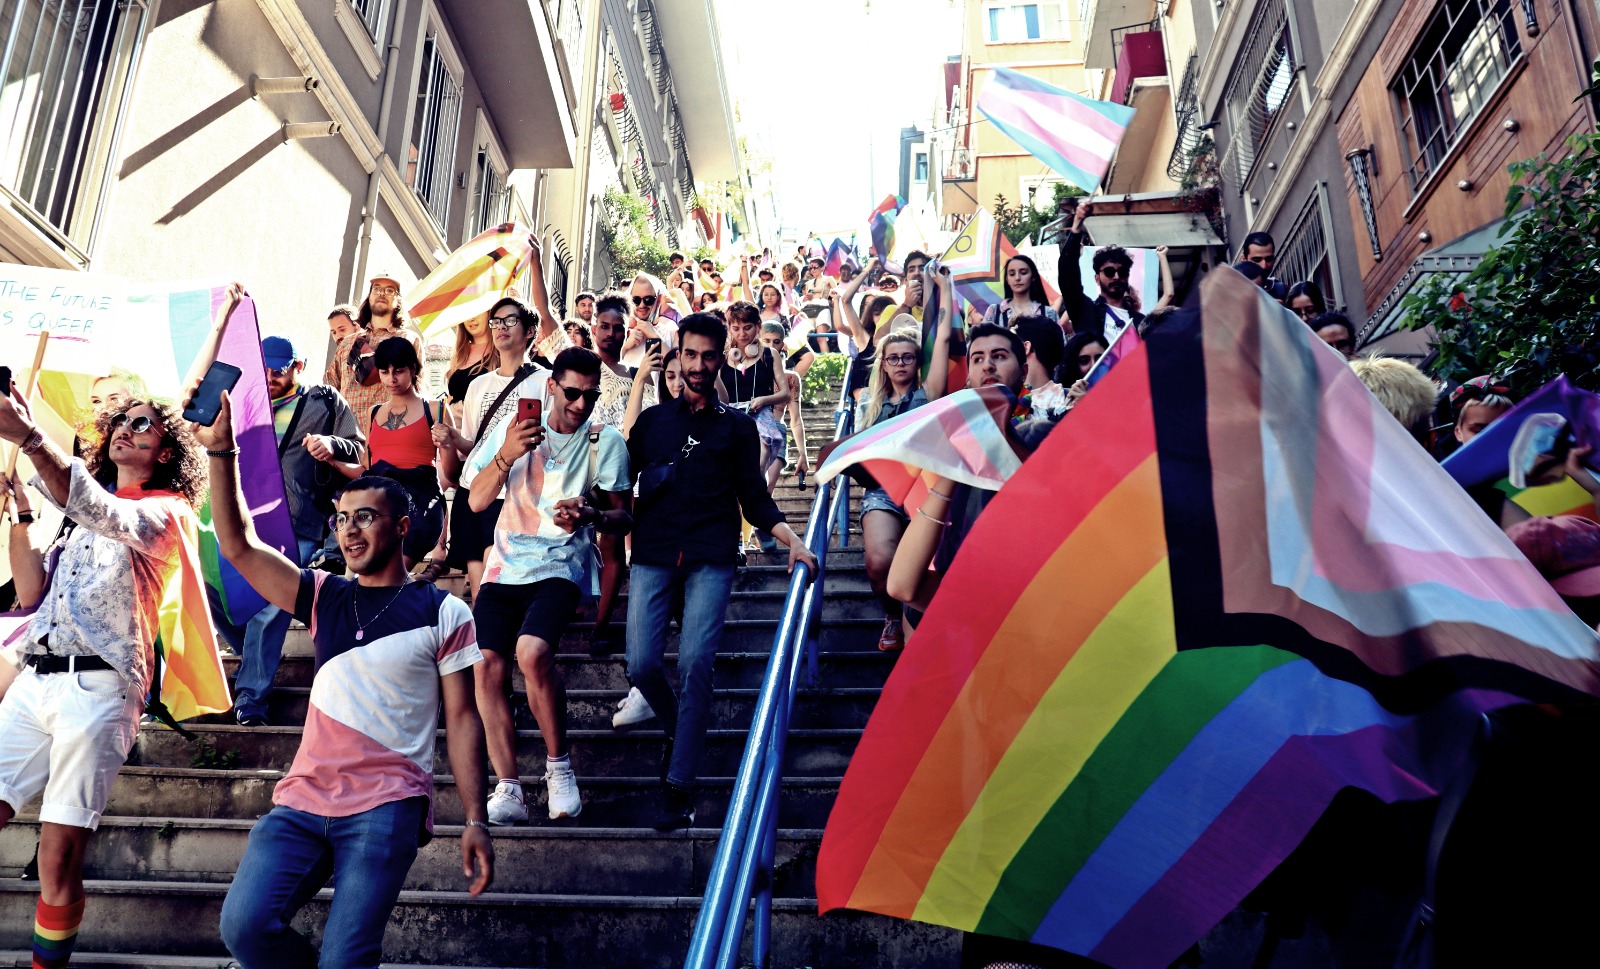 Beyoğlu Kaymakamlığı, Onur Haftası yasağını komplo teorileriyle savundu! | Kaos GL - LGBTİ+ Haber Portalı Haber